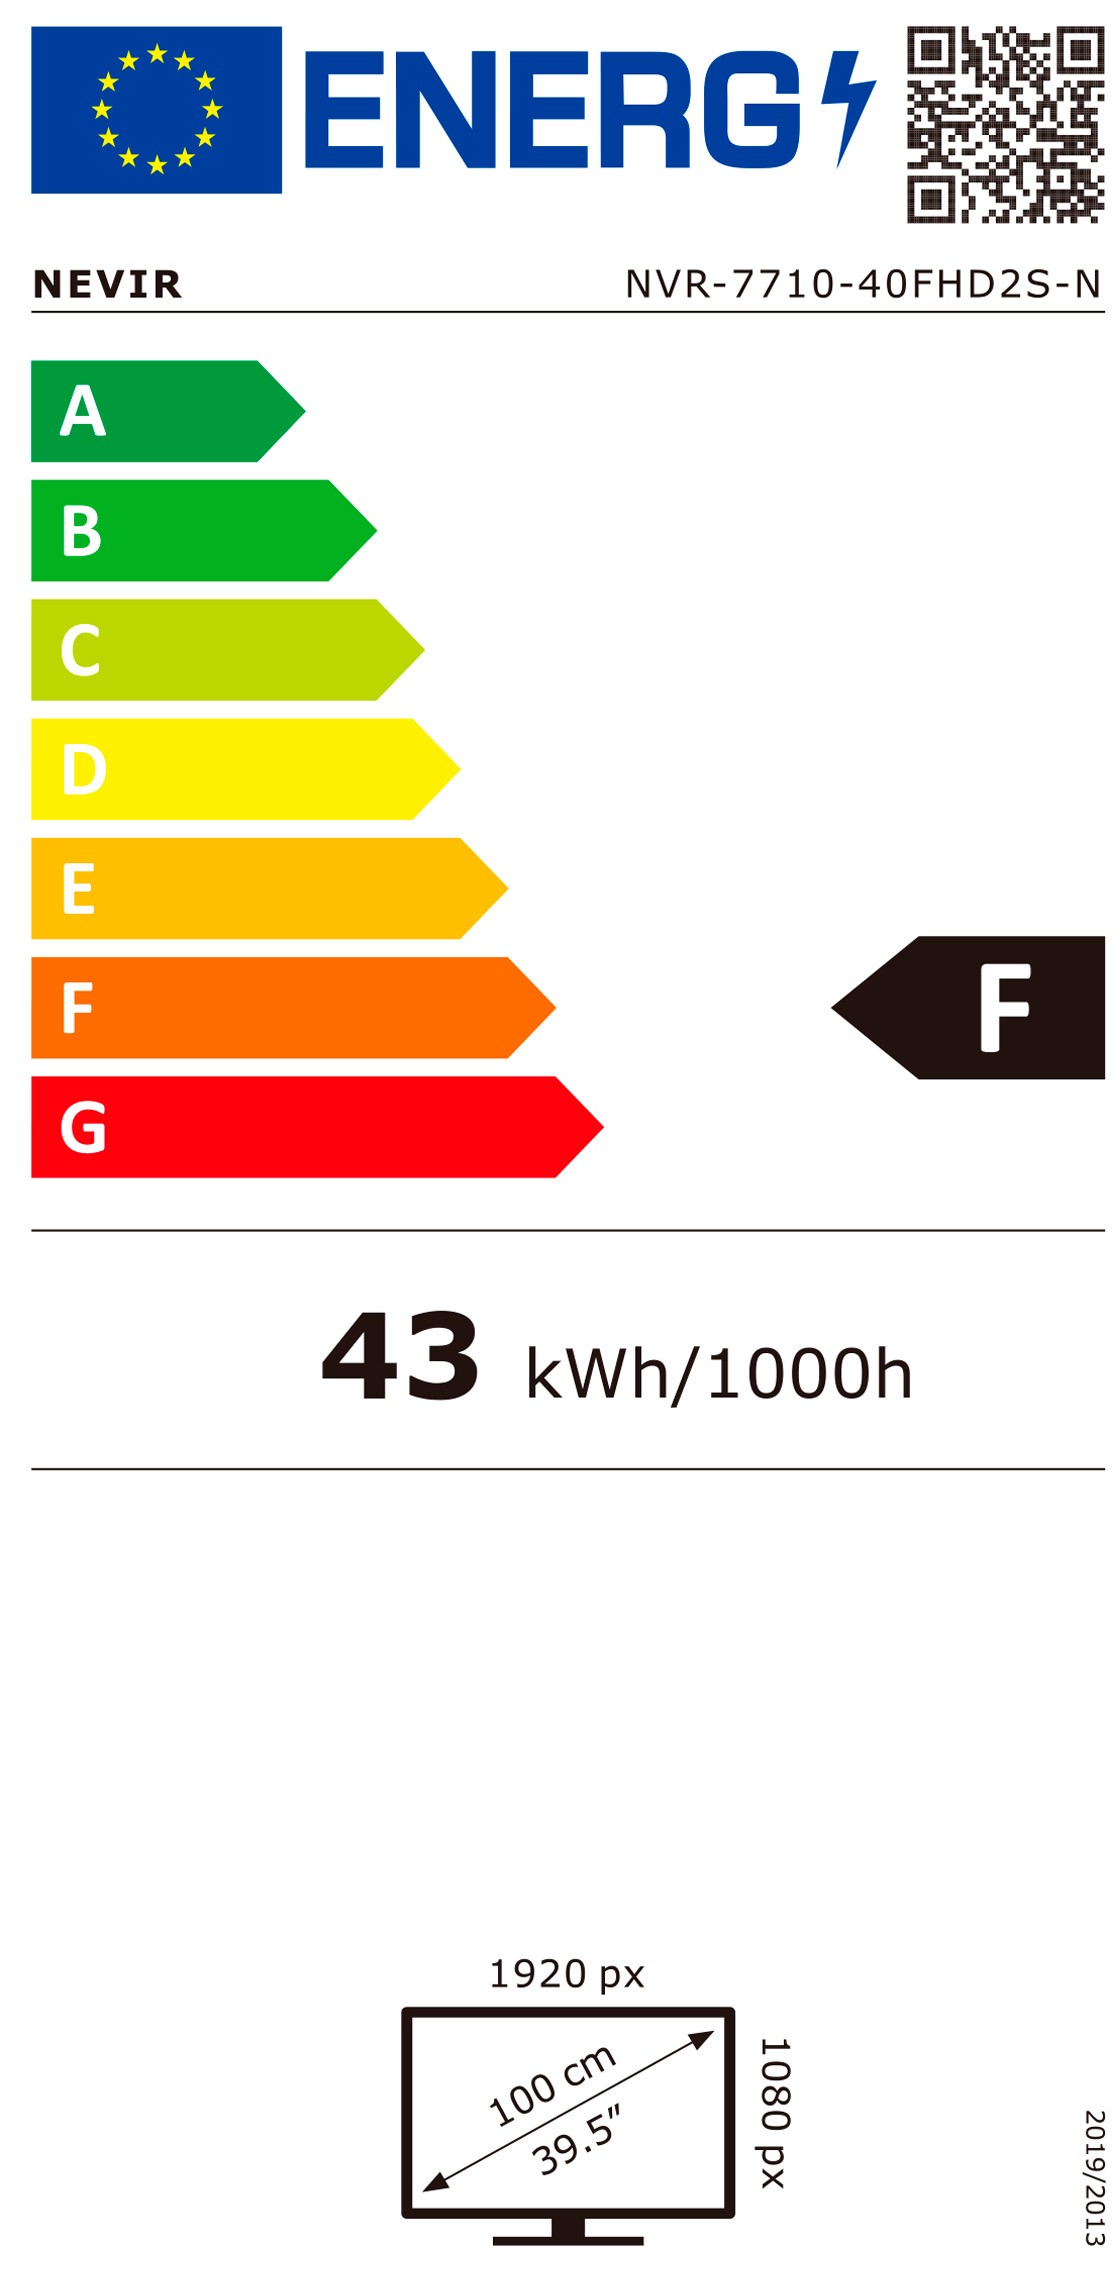 Etiqueta de Eficiencia Energética - NVR-7710-40FHD2S-N